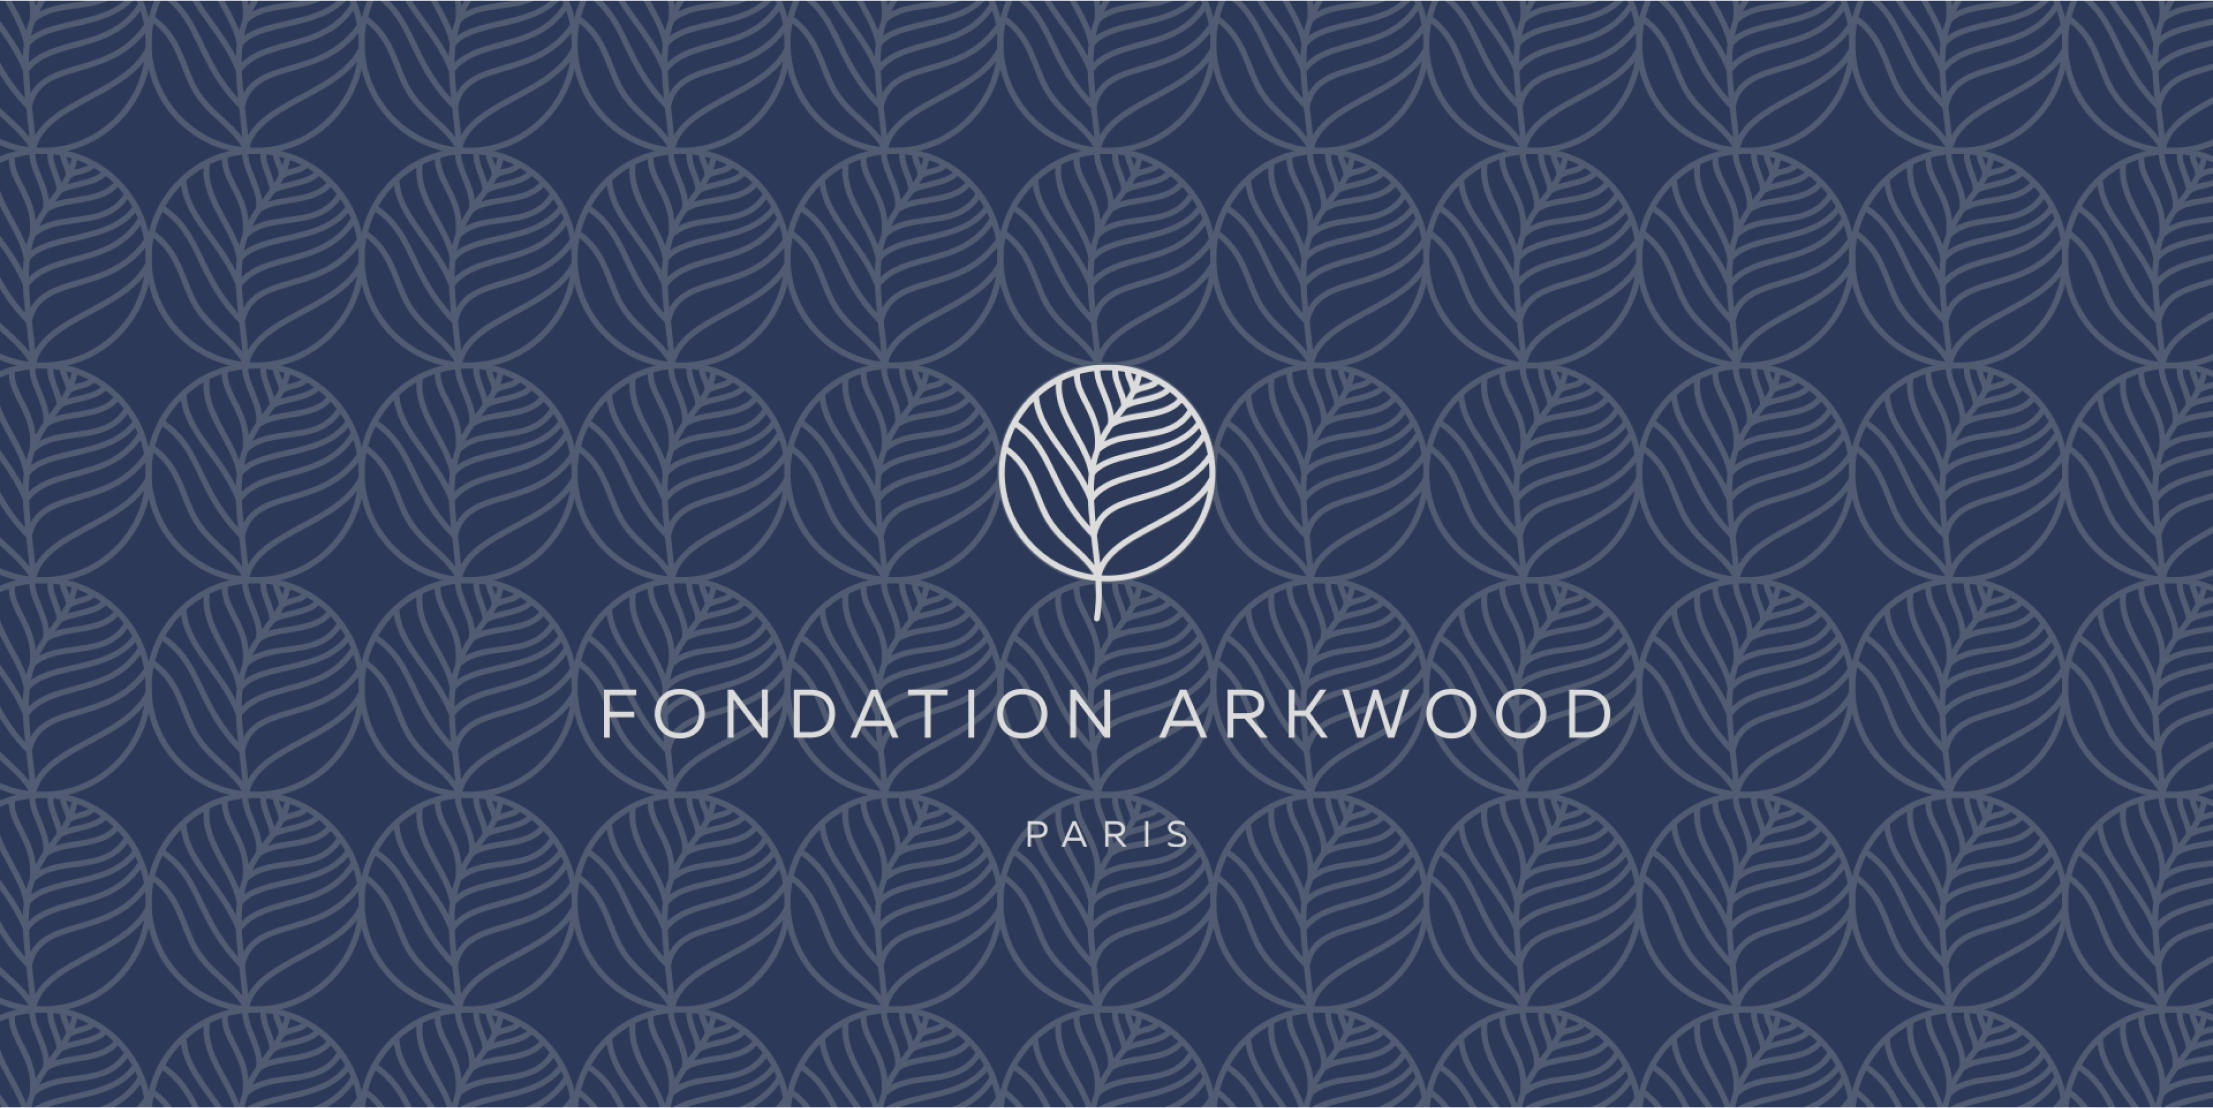 Arkwood (fondation)